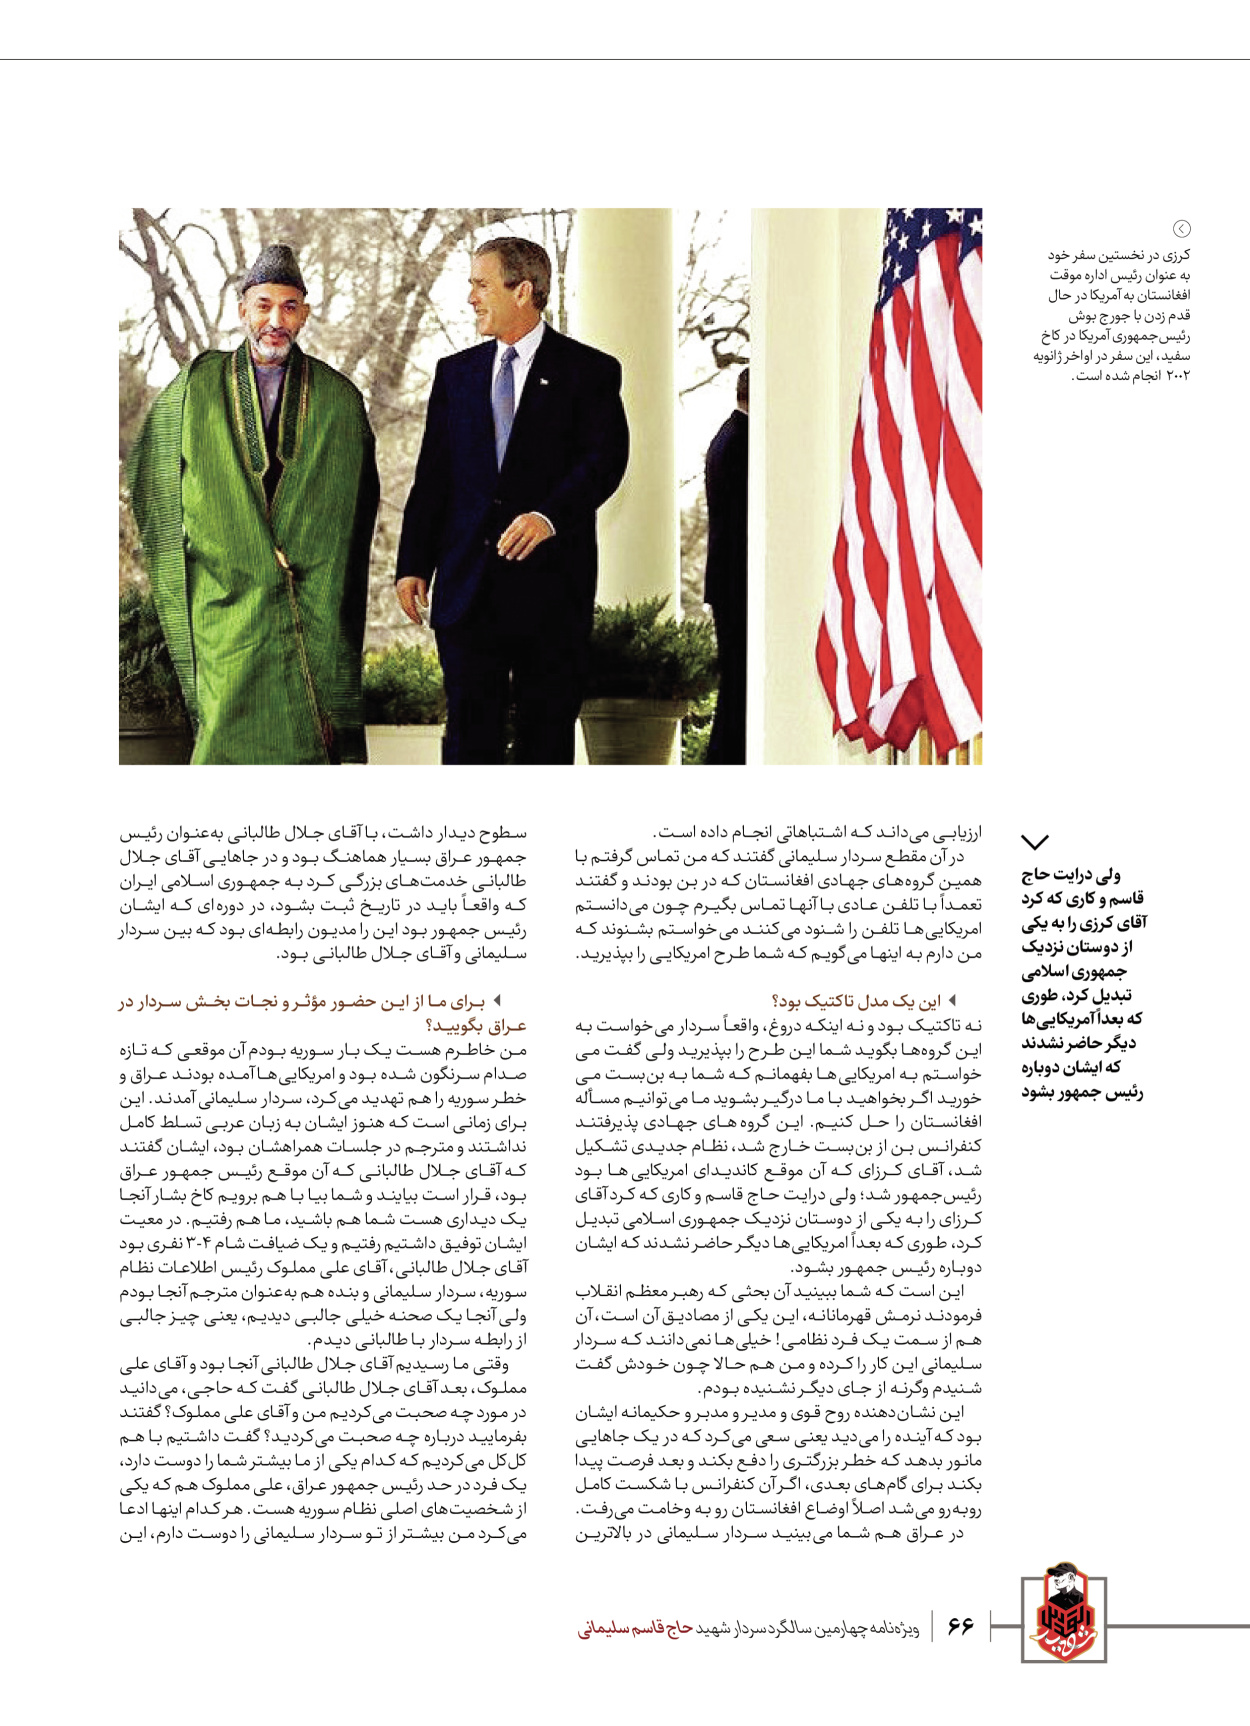 روزنامه ایران - ویژه نامه ویژ ه نامه چهارمین سالگرد شهادت سردار سلیمانی - ۱۳ دی ۱۴۰۲ - صفحه ۶۶